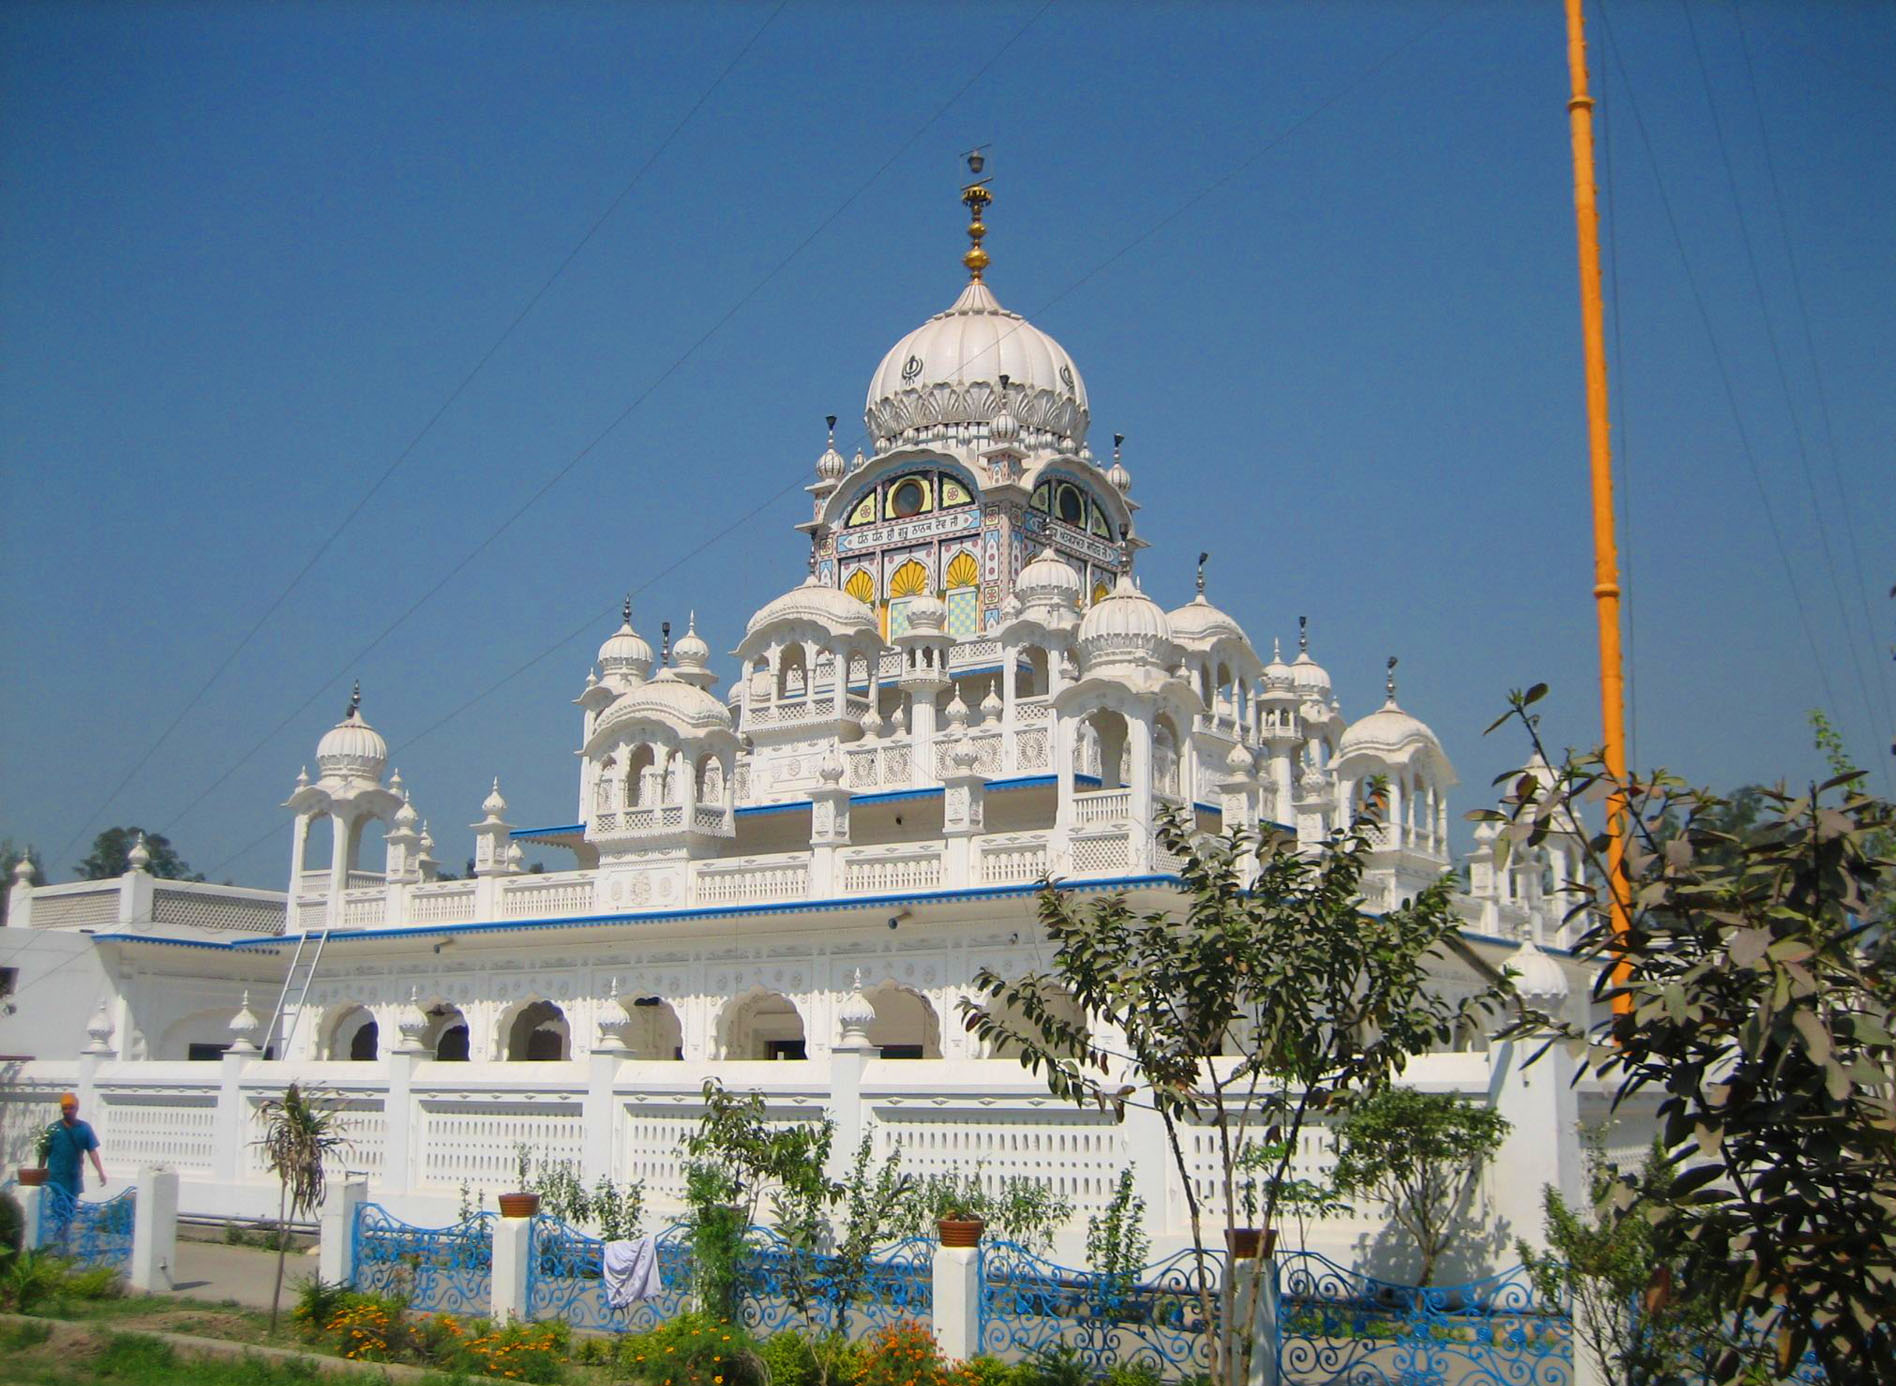 Gurudwara Sri Antaryamta Sahib, Sultanpur Lodhi